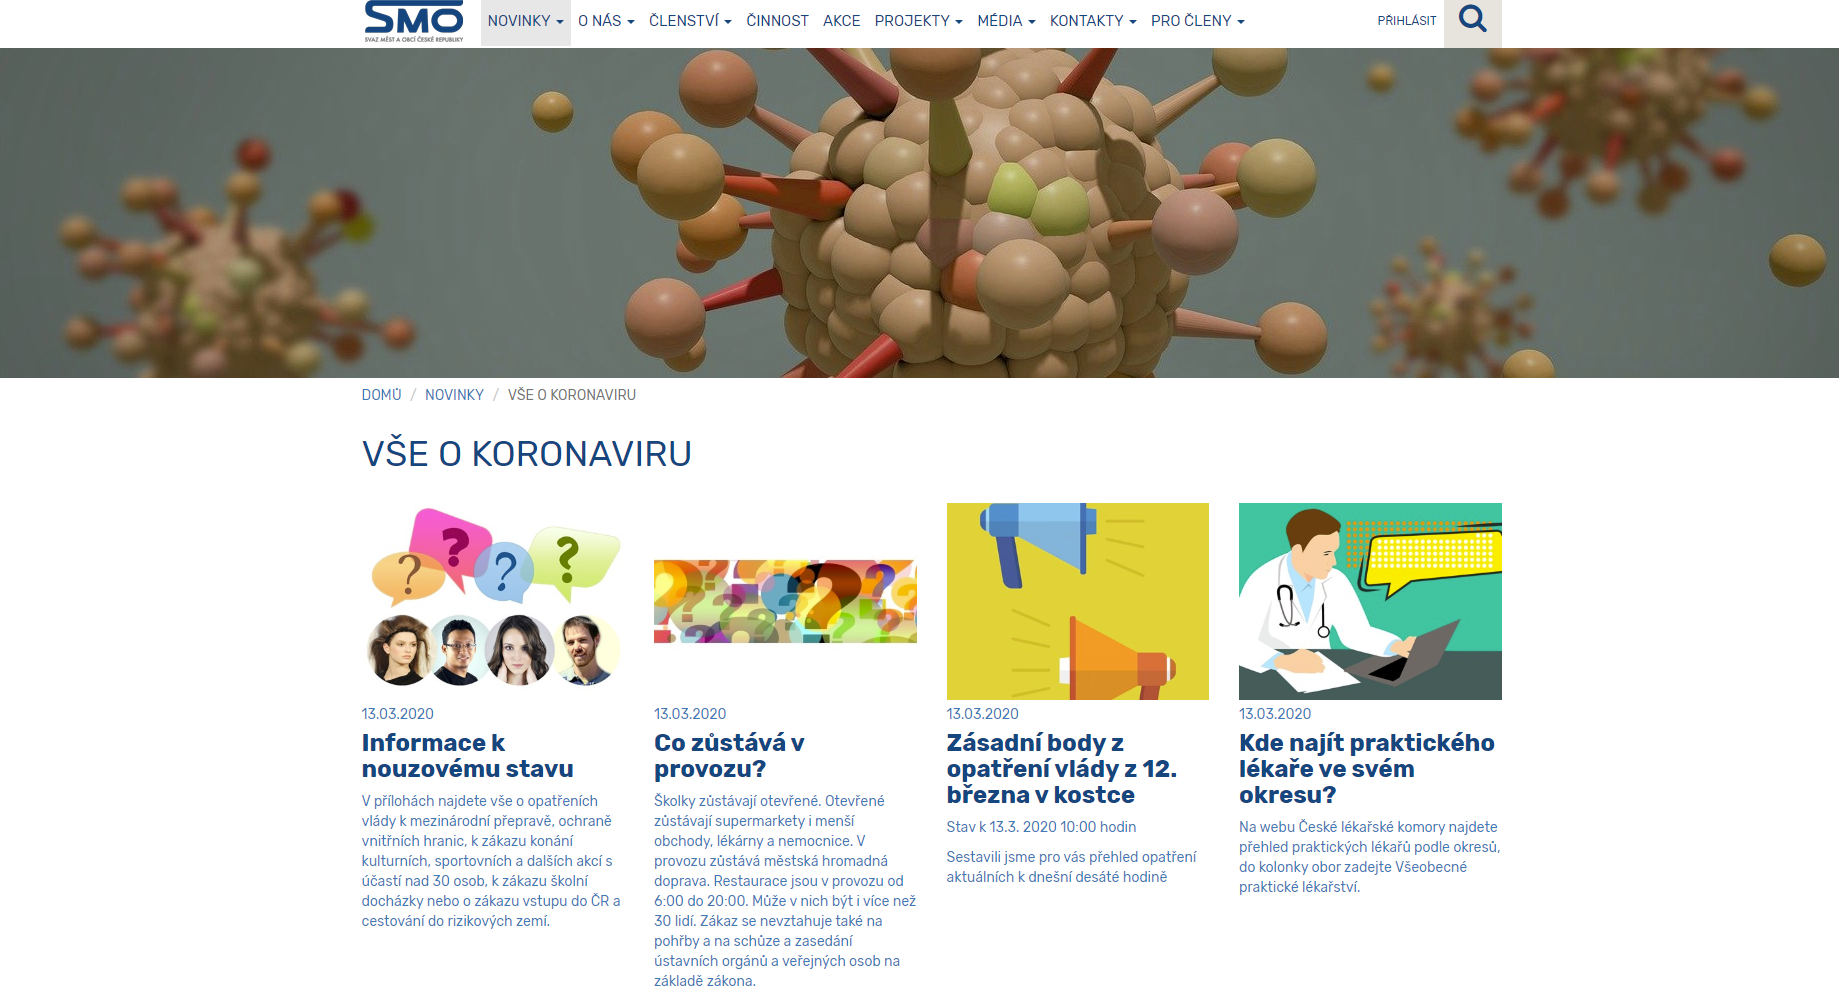 Stránka na webu Svazu měst a obcí Vše o koronaviru